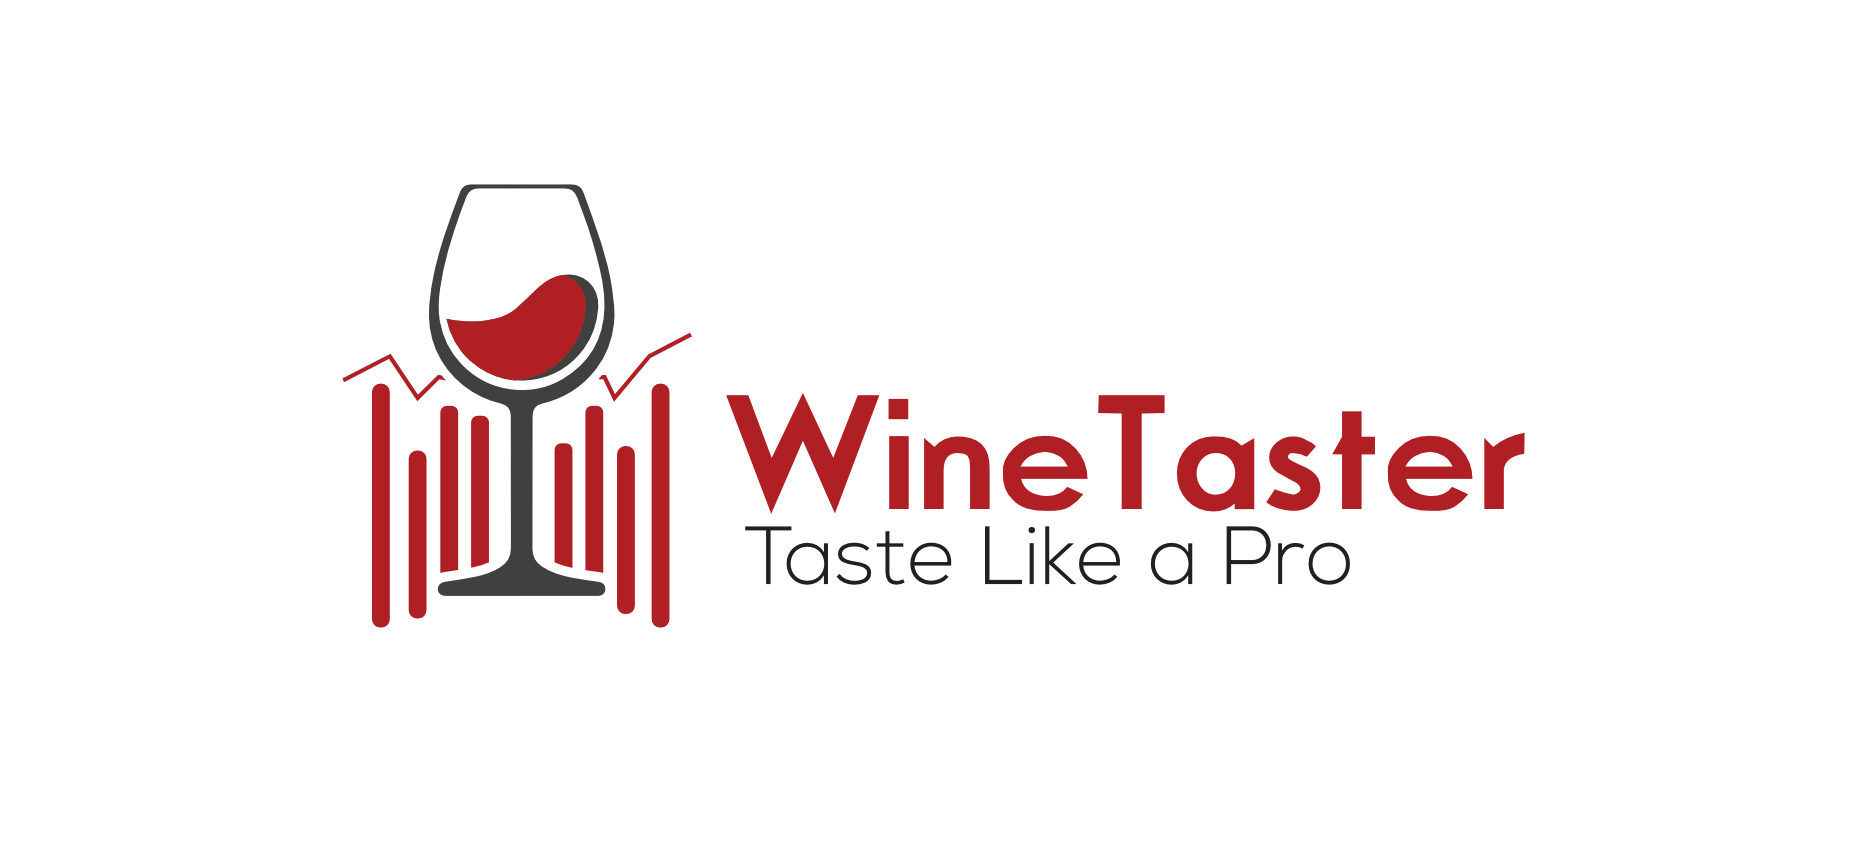 WineTaster 3 wordmark